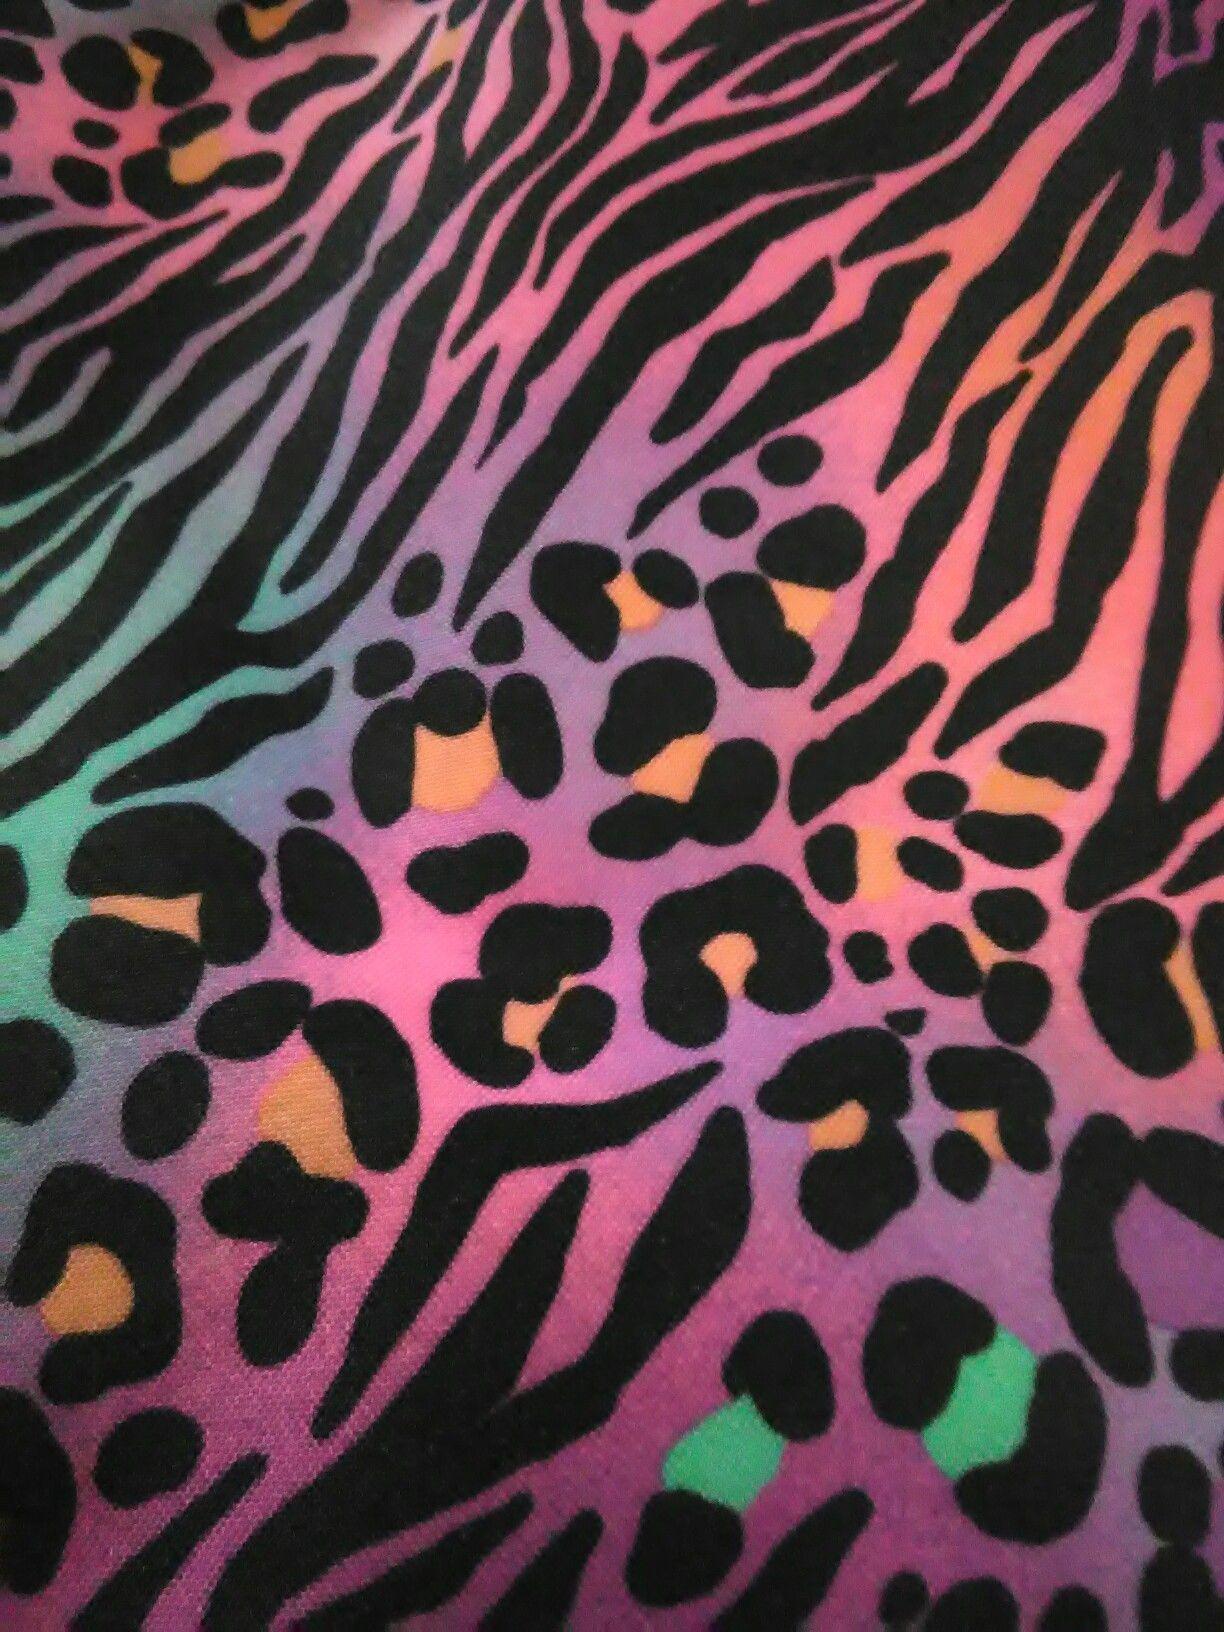 cheetah. Wallpaper and Prints